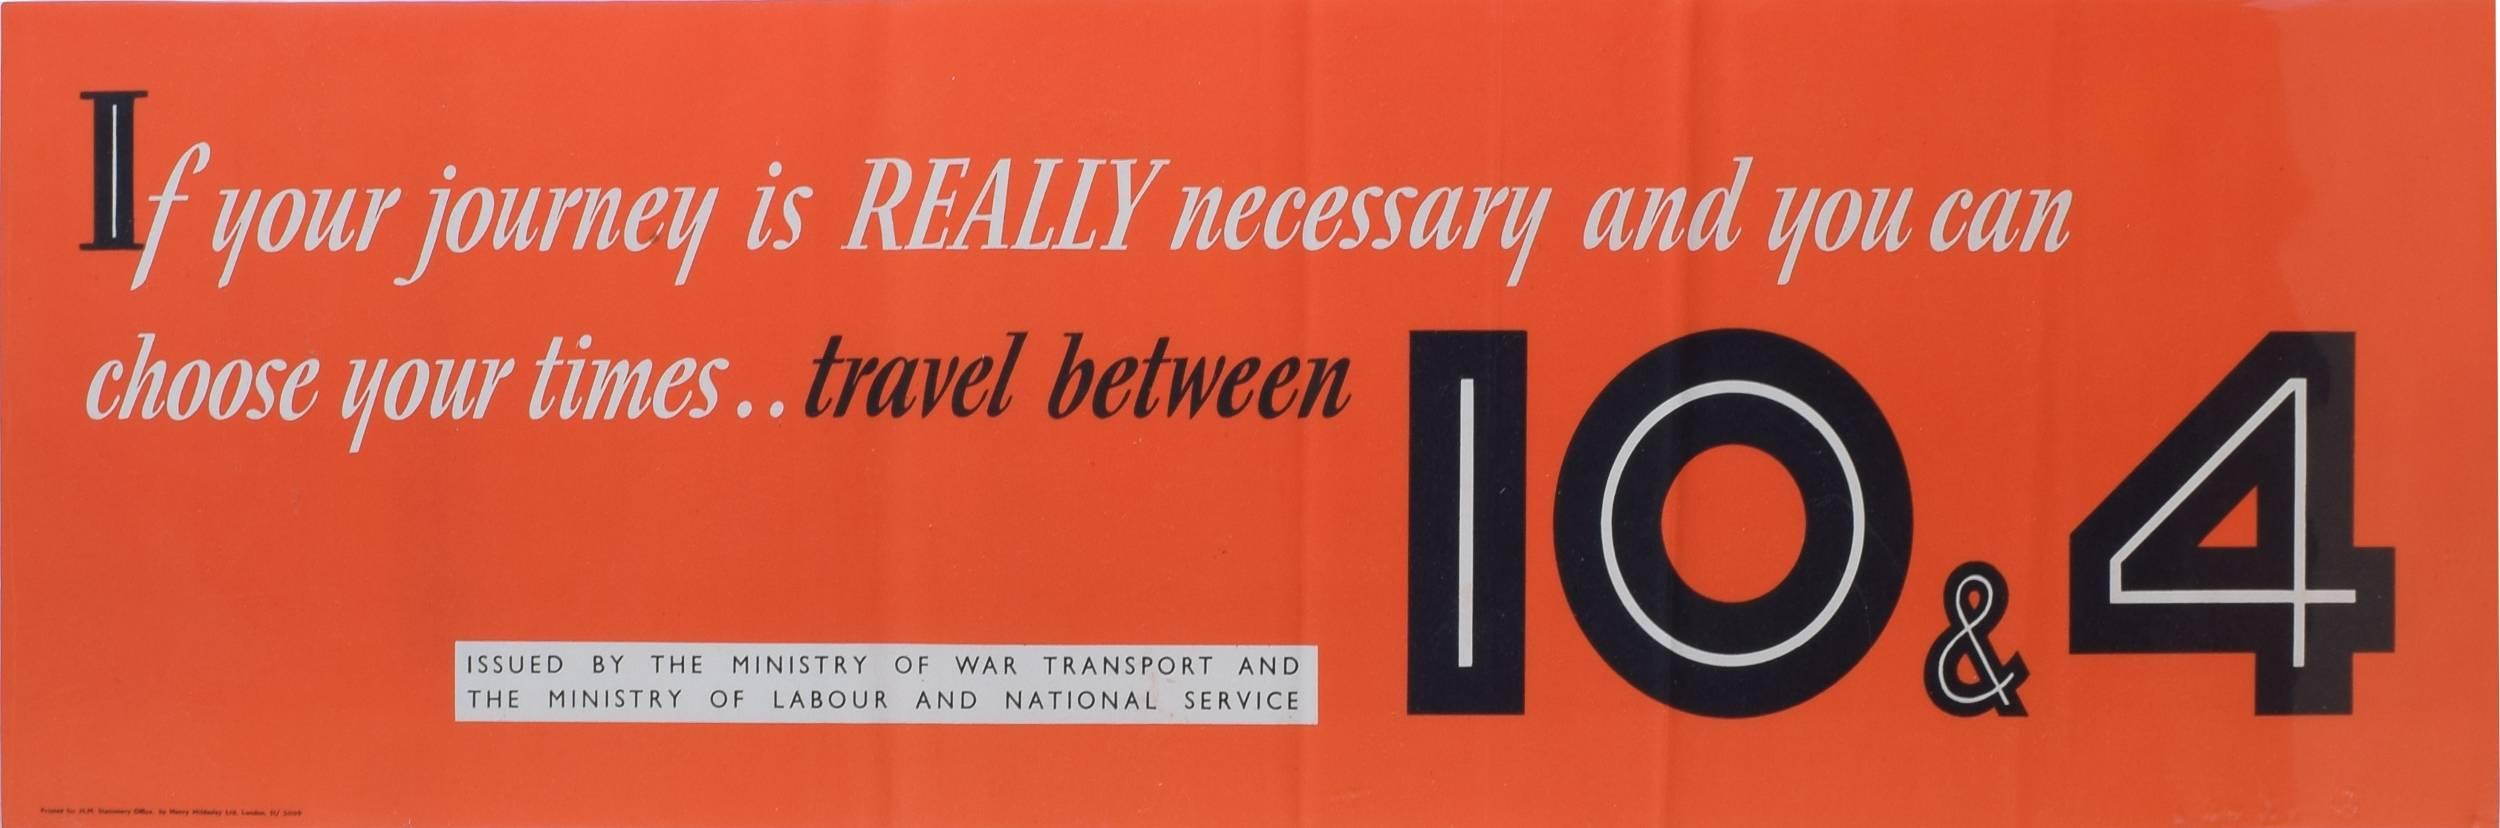 Affiche originale de voyage entre 10 et 4 exemplaires, vers 1943 - Print de Unknown